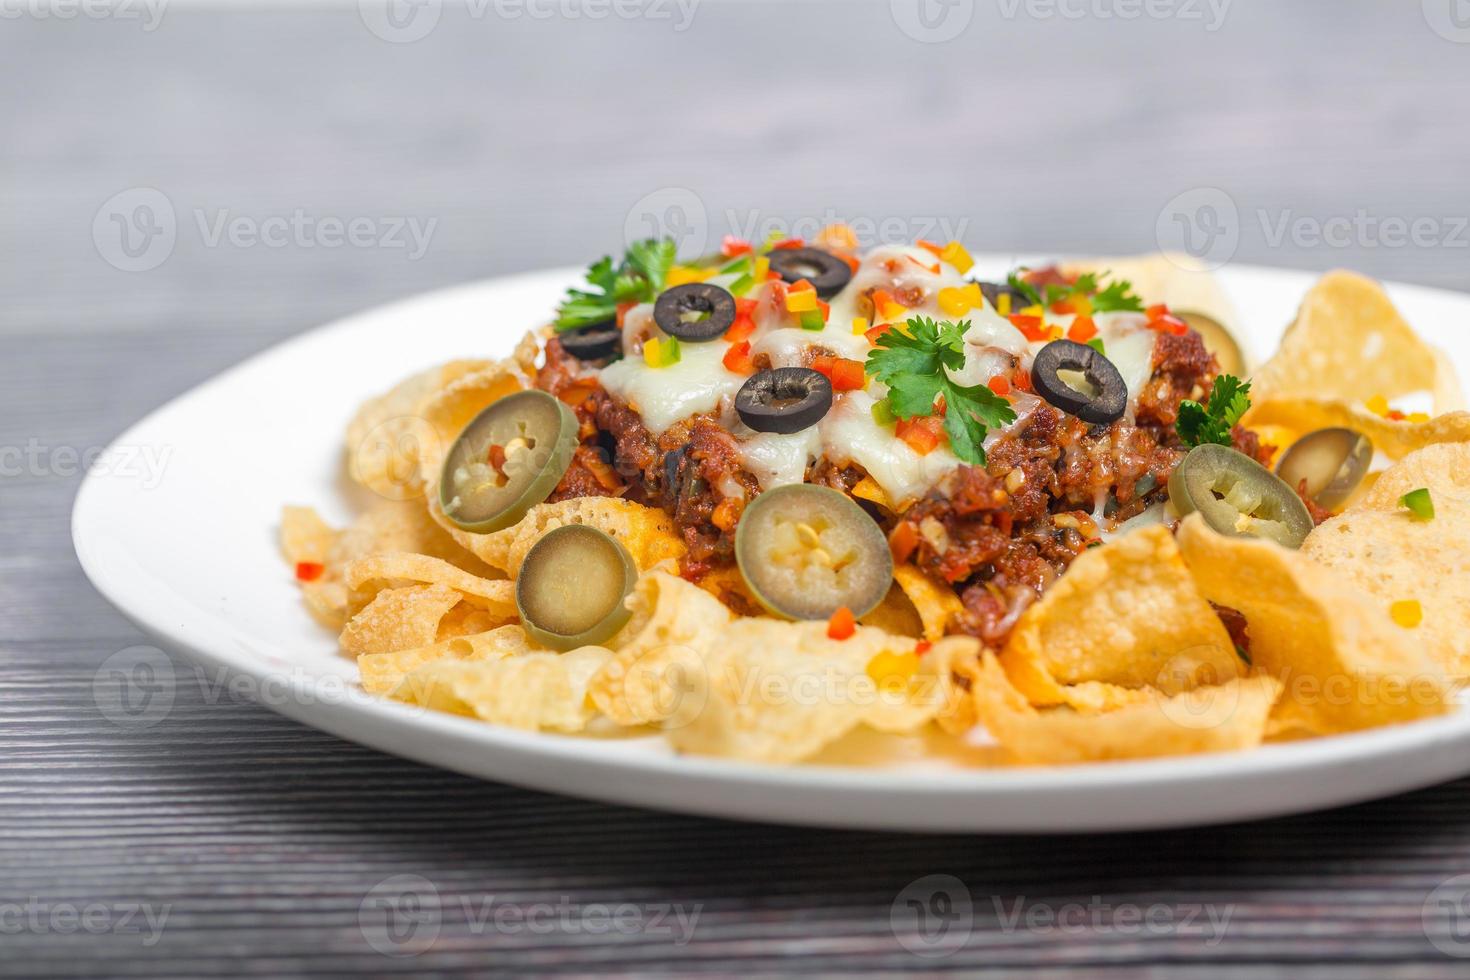 Mexicaans beroemd voedsel pittig grond rundvlees nacho's. verwarmde knapperig tortilla chips met gesmolten kaas en jalapeno geserveerd een tussendoortje voedsel. foto